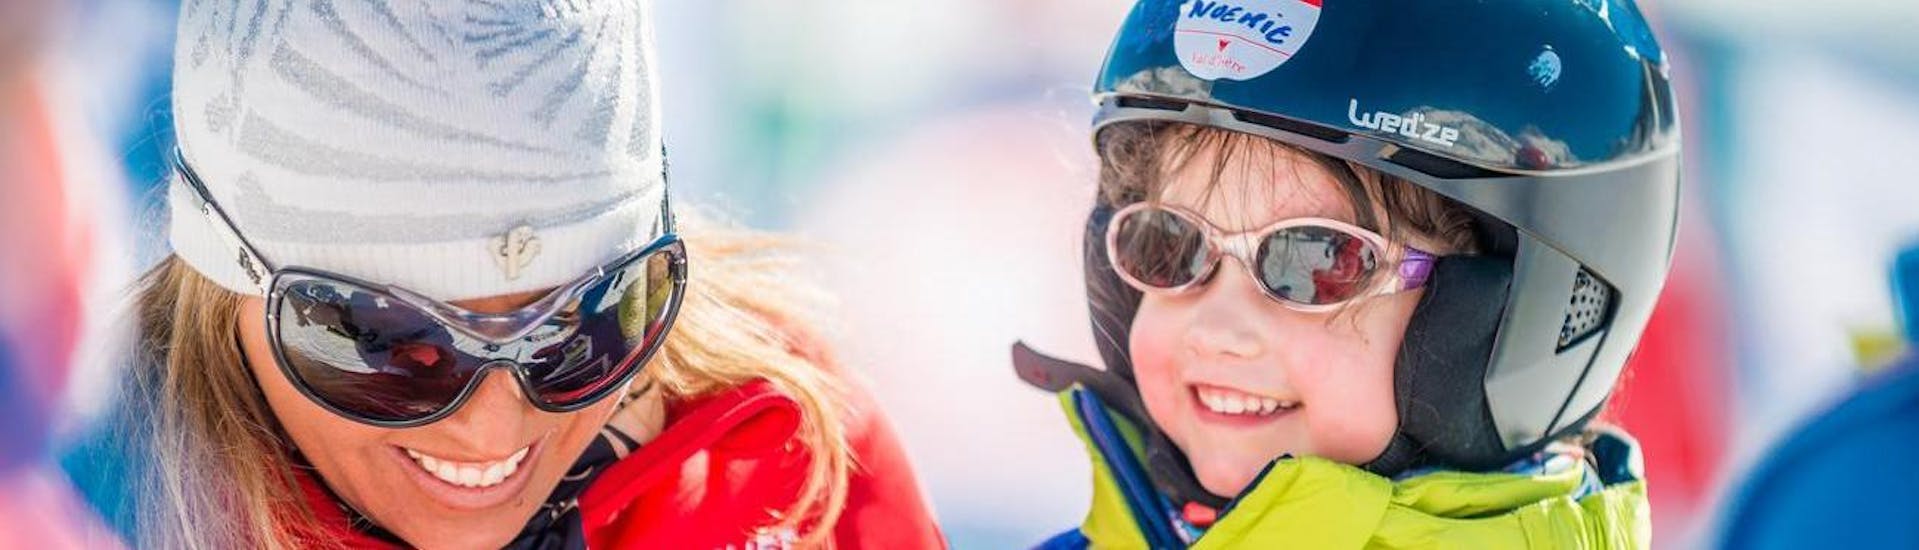 Un bambino impara a sciare durante le lezioni di sci per bambini "Giardino delle nevi" (4-5 anni) - Principianti organizzate dalla scuola ESF Val d'Isère.